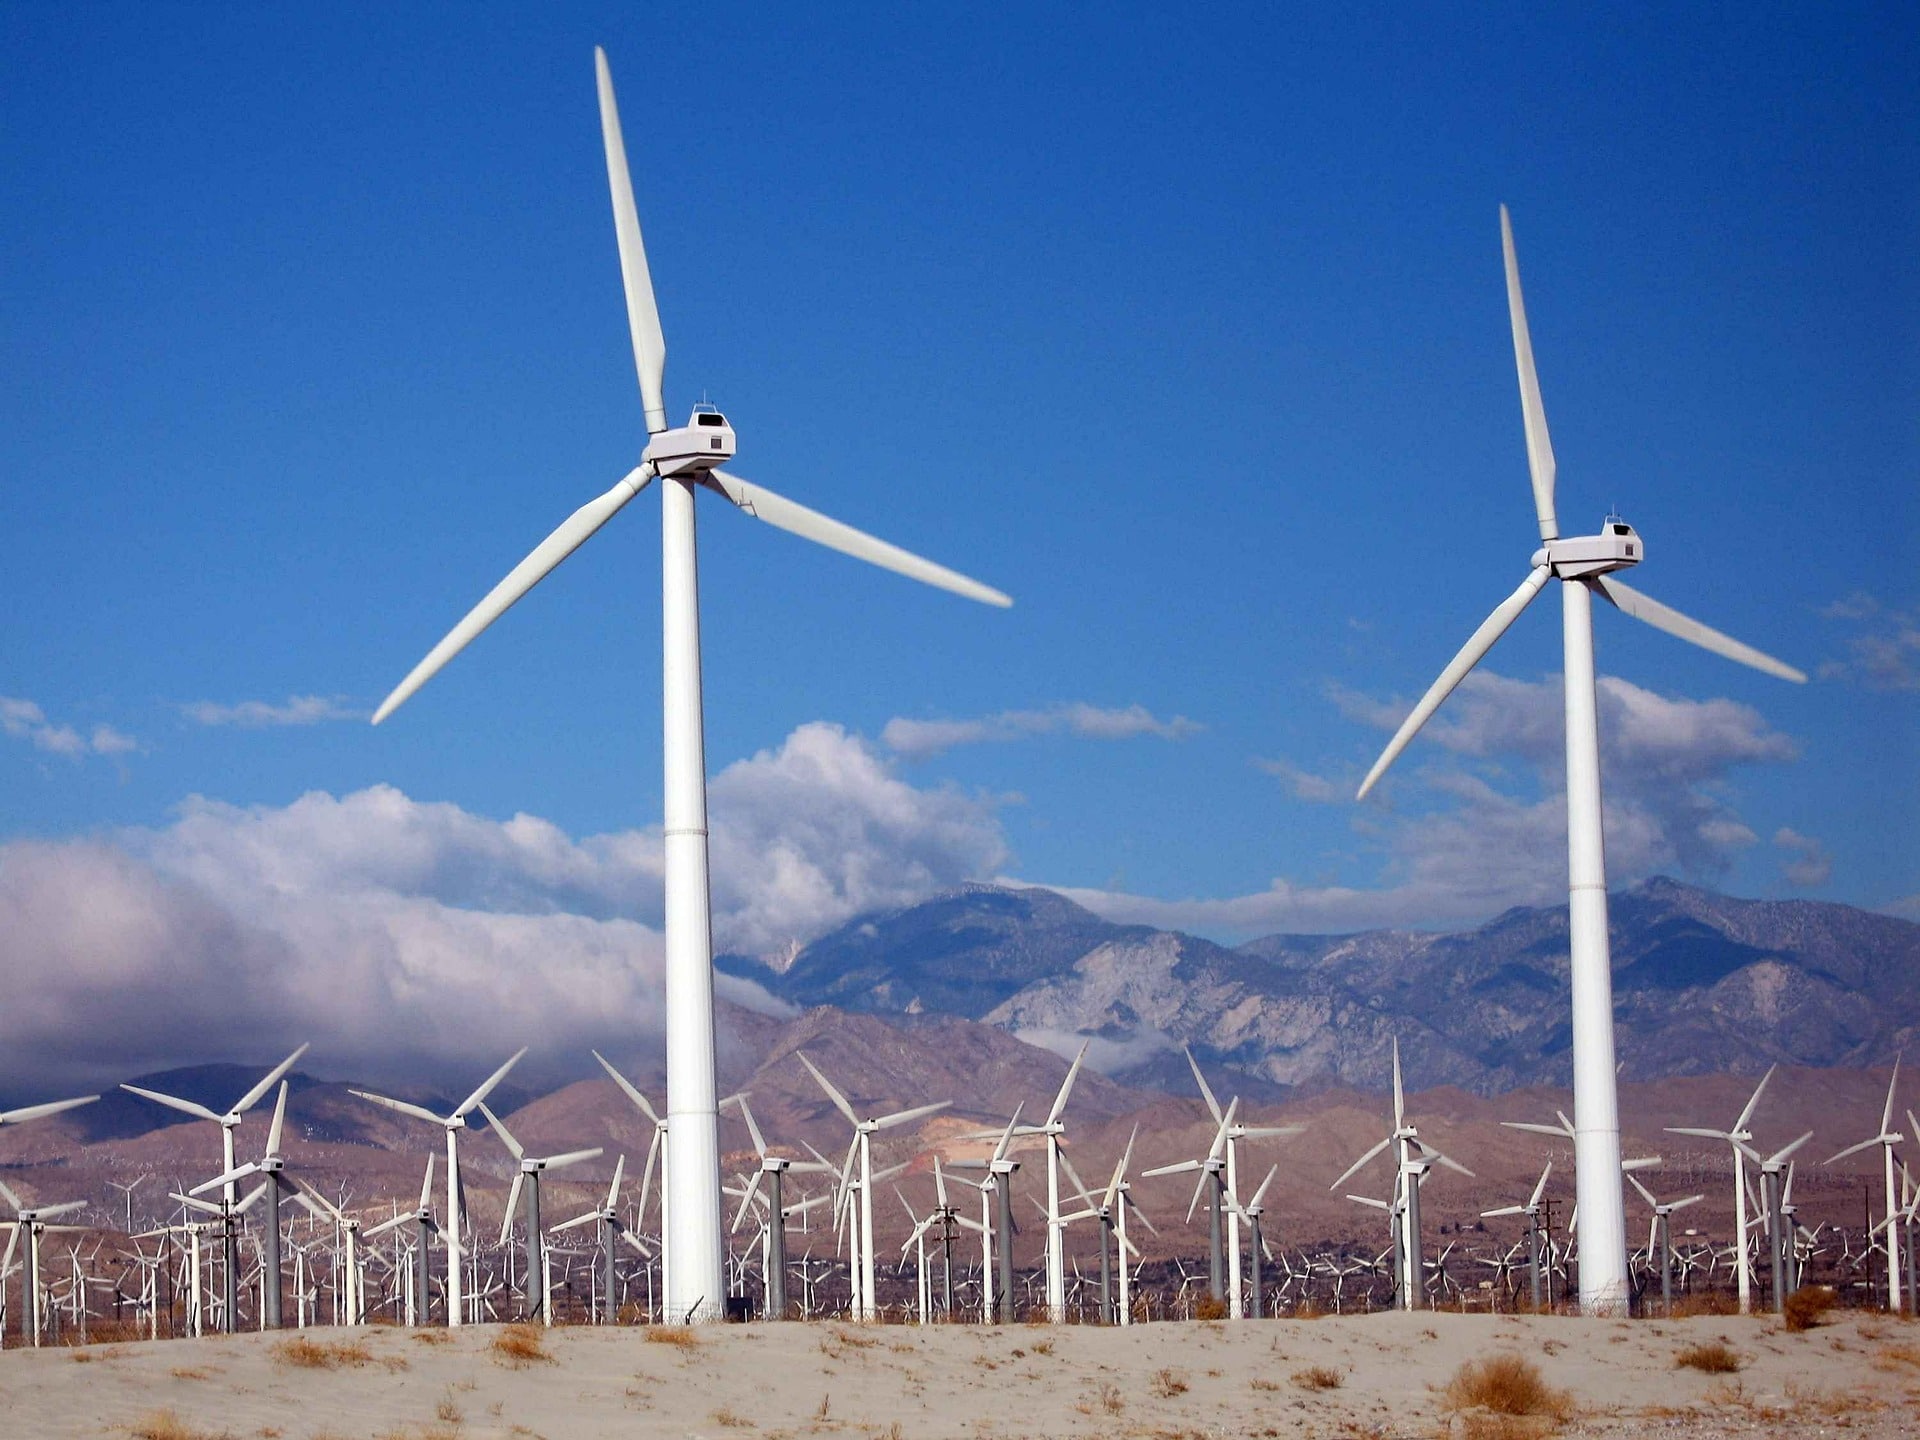 Vestas Wind Systems, firma de energía eólica, se instalará en México |  Nación Eléctrica - El portal de noticias sobre energía eléctrica más leído  de México.